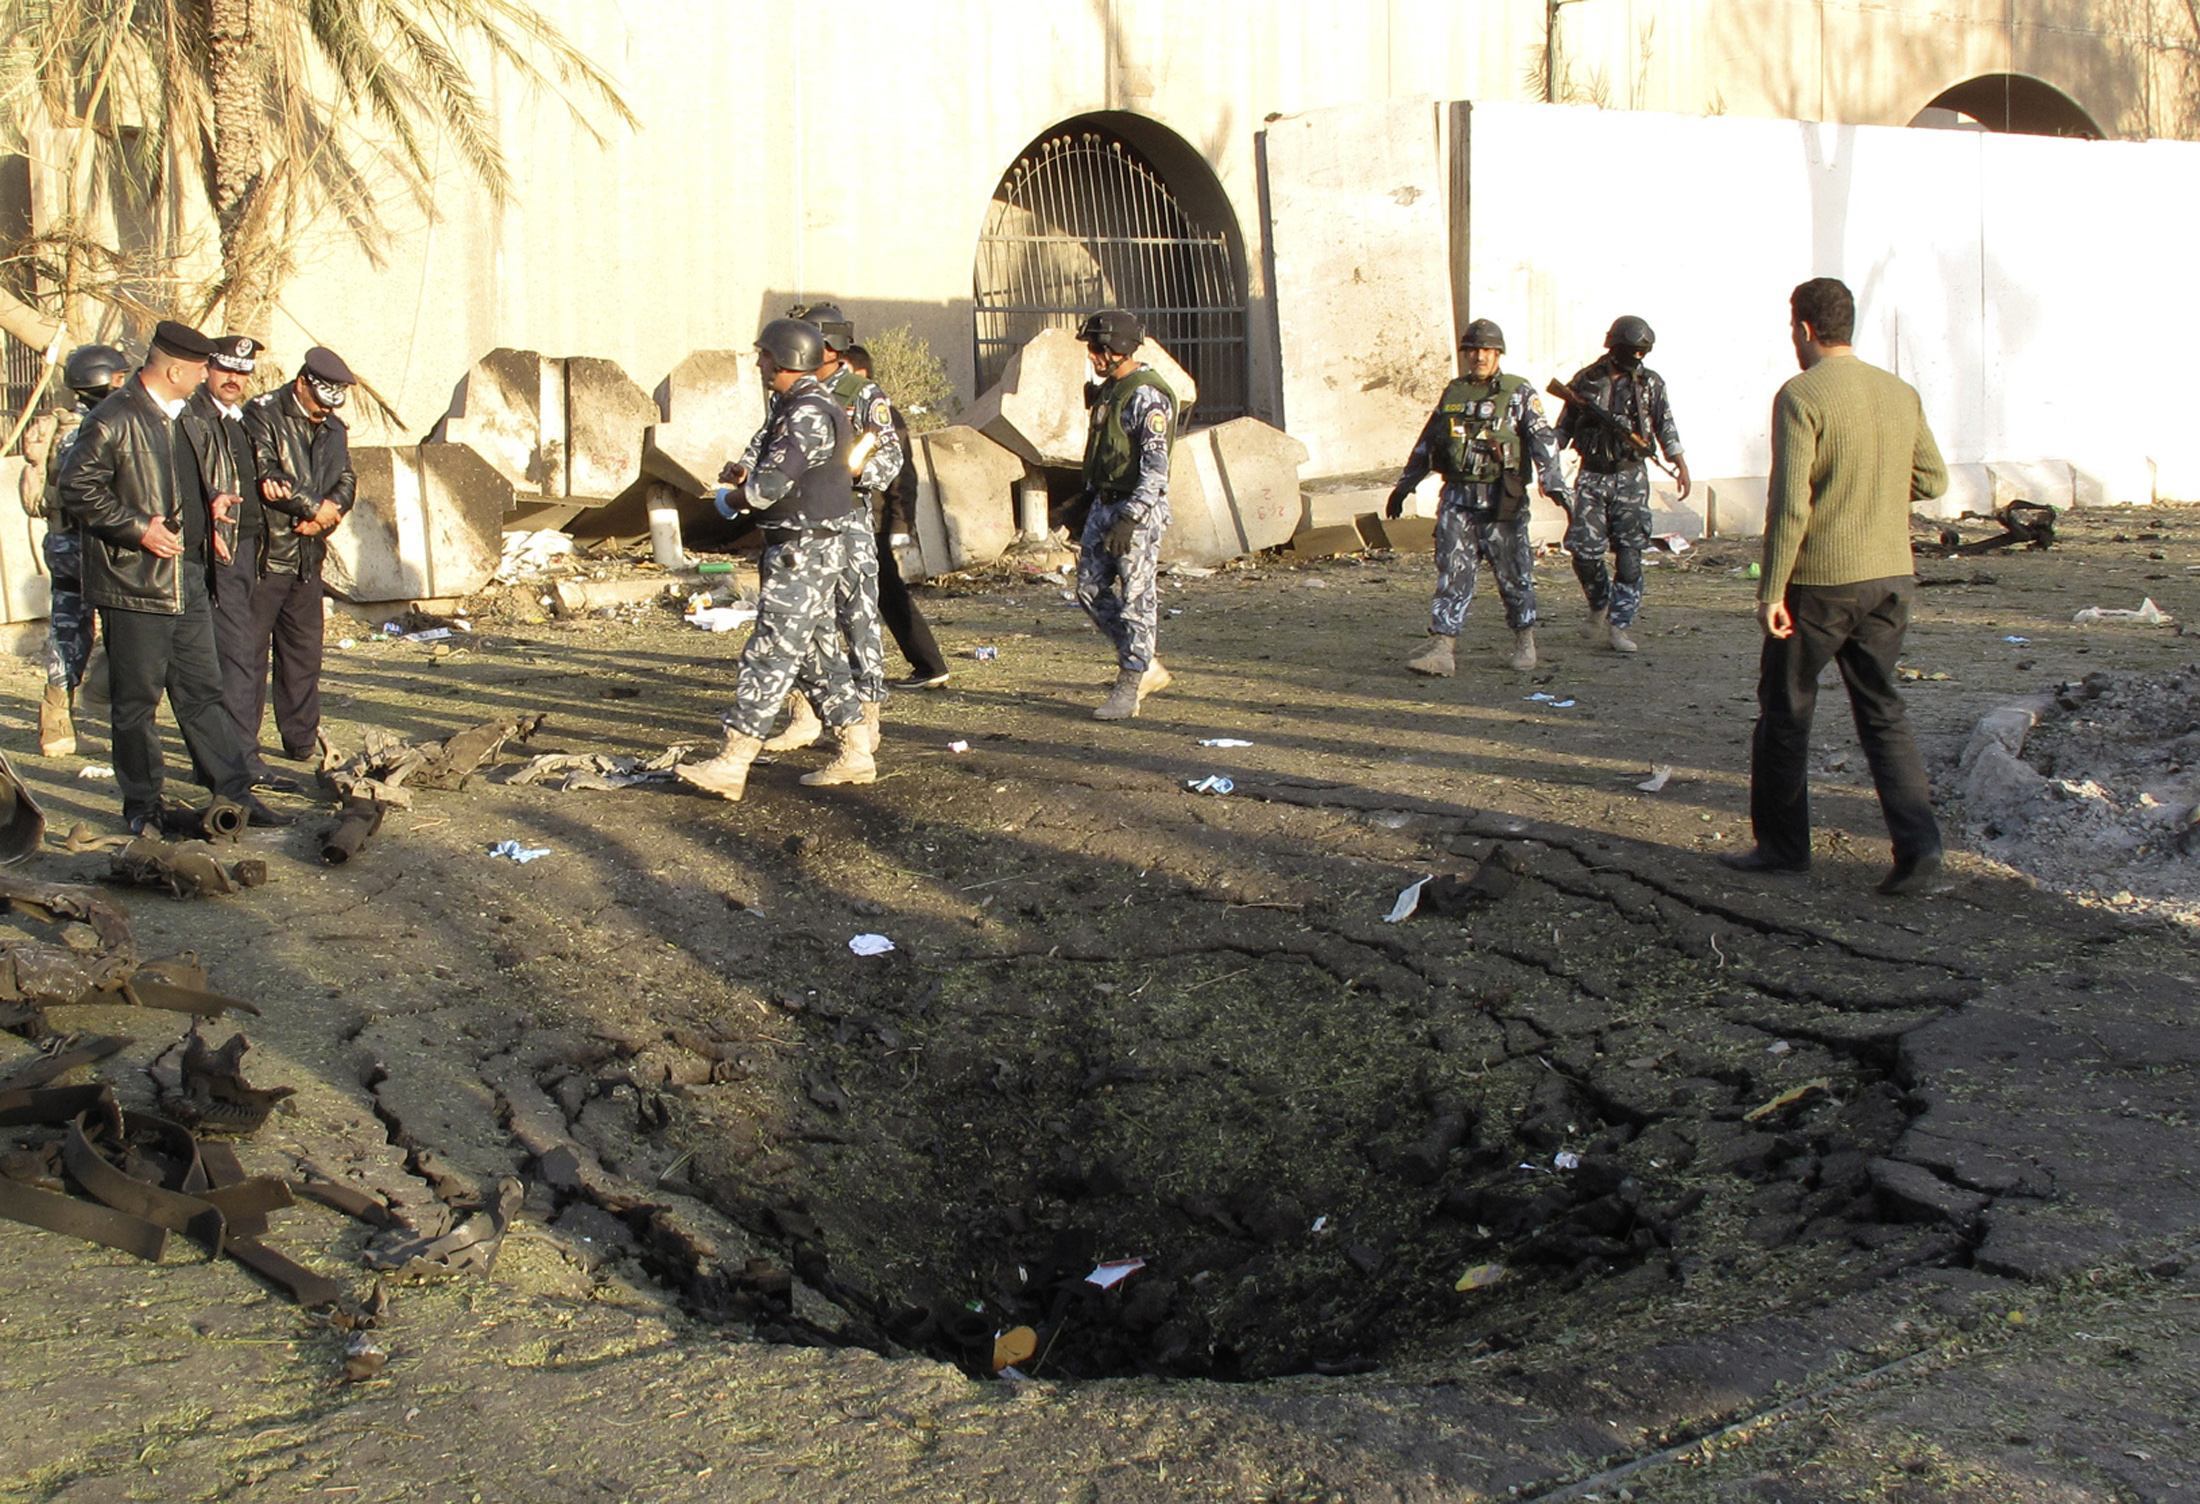 Οι αστυνομικοί μαζεύονται σε ένα από τα σημεία της βομβιστικής επίθεσης στην Βαγδάτη. ΦΩΤΟ REUTERS